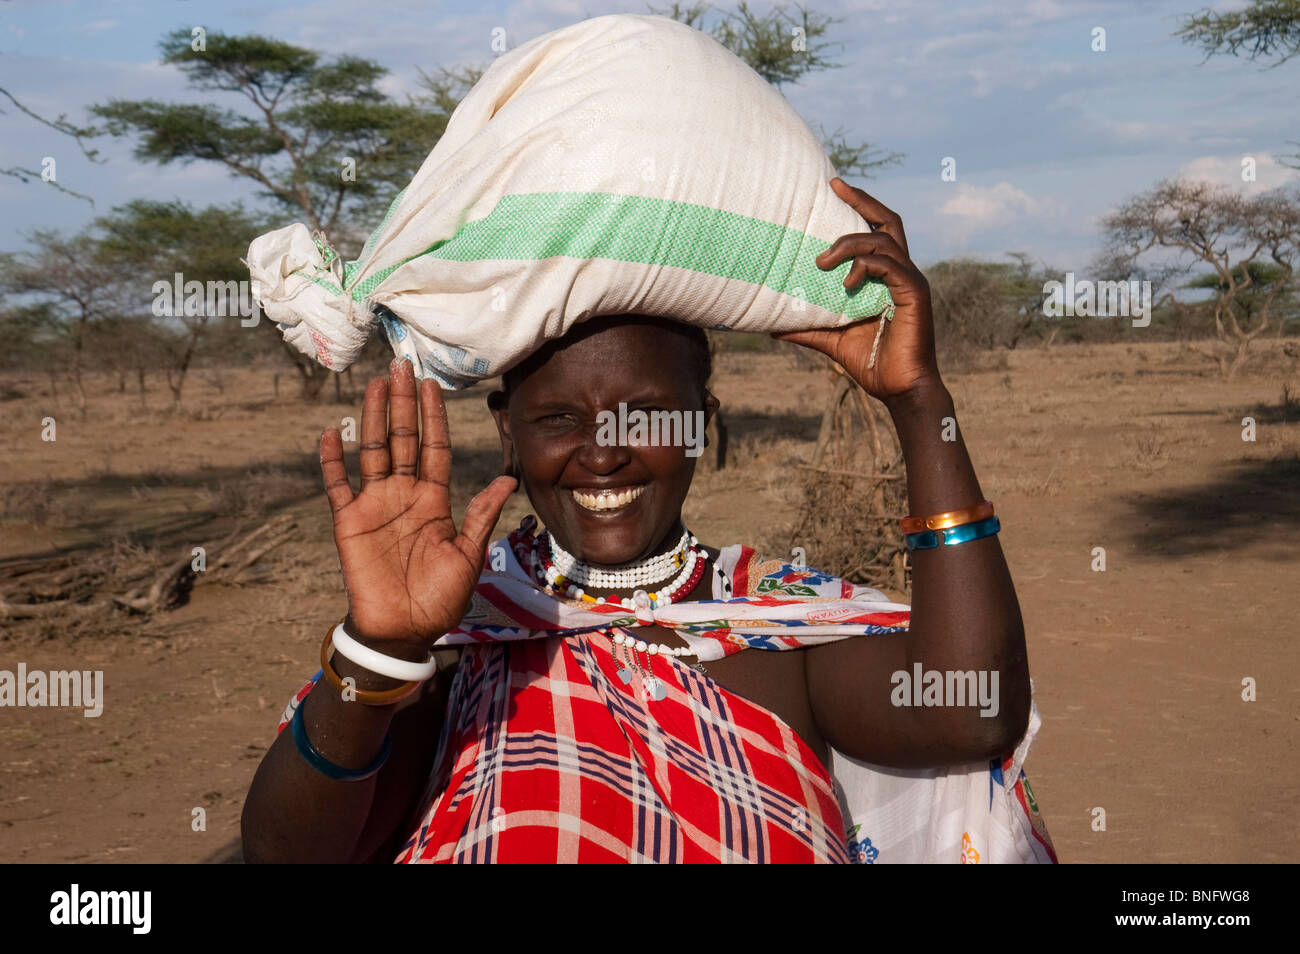 Accueil femme Masai en transportant un sac de maïs sur la tête, Malambo, région d'Arusha, Tanzanie Banque D'Images